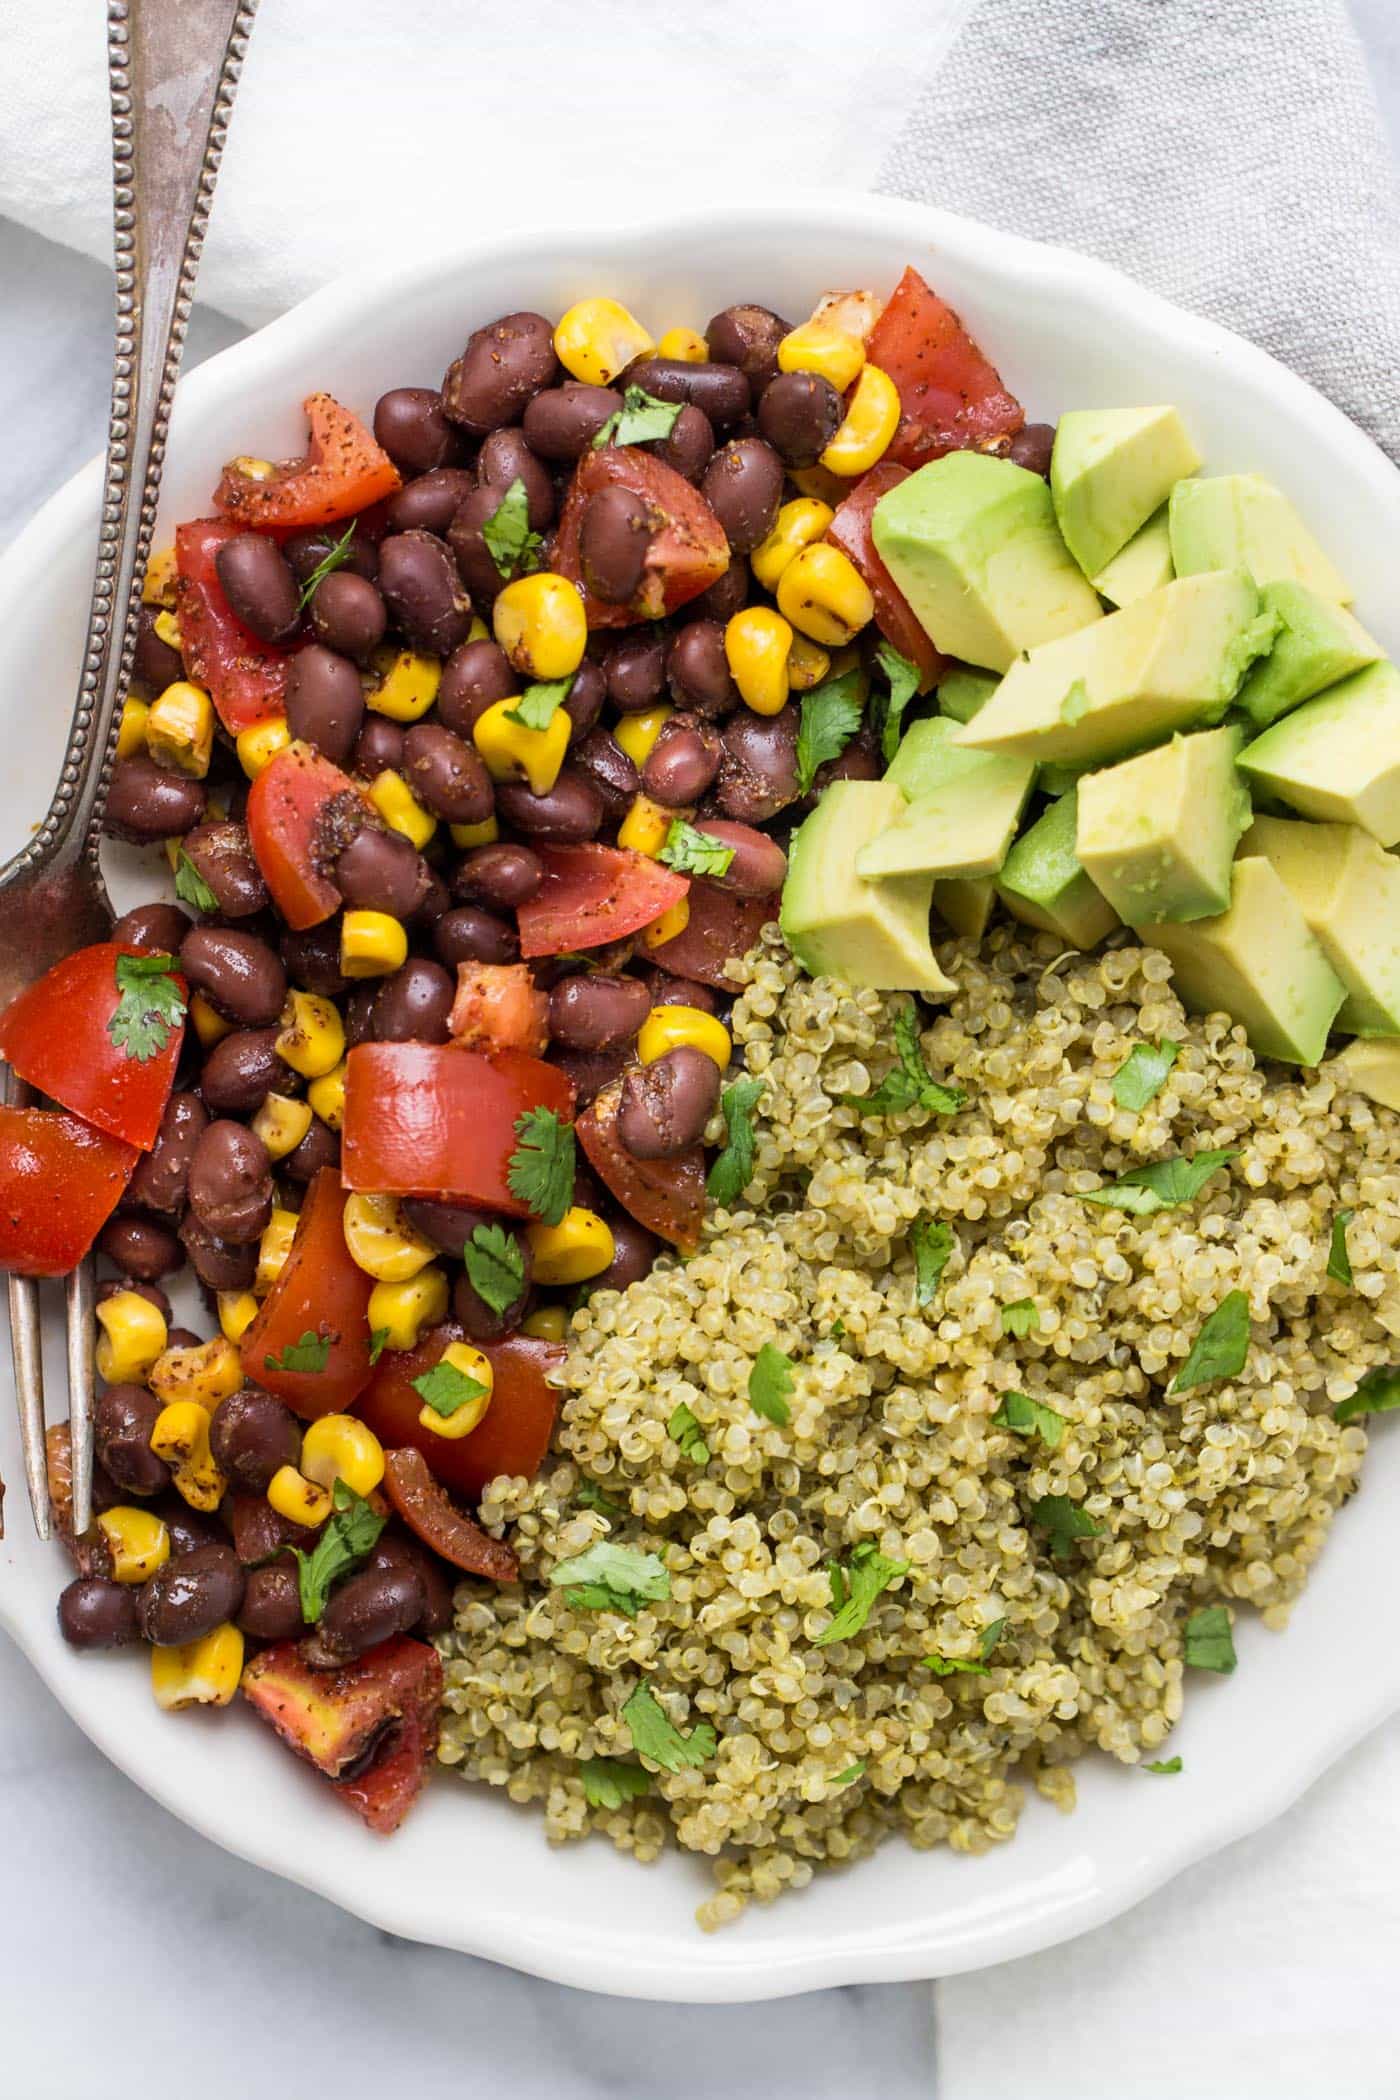 https://www.simplyquinoa.com/wp-content/uploads/2016/05/green-mexican-quinoa-7.jpg